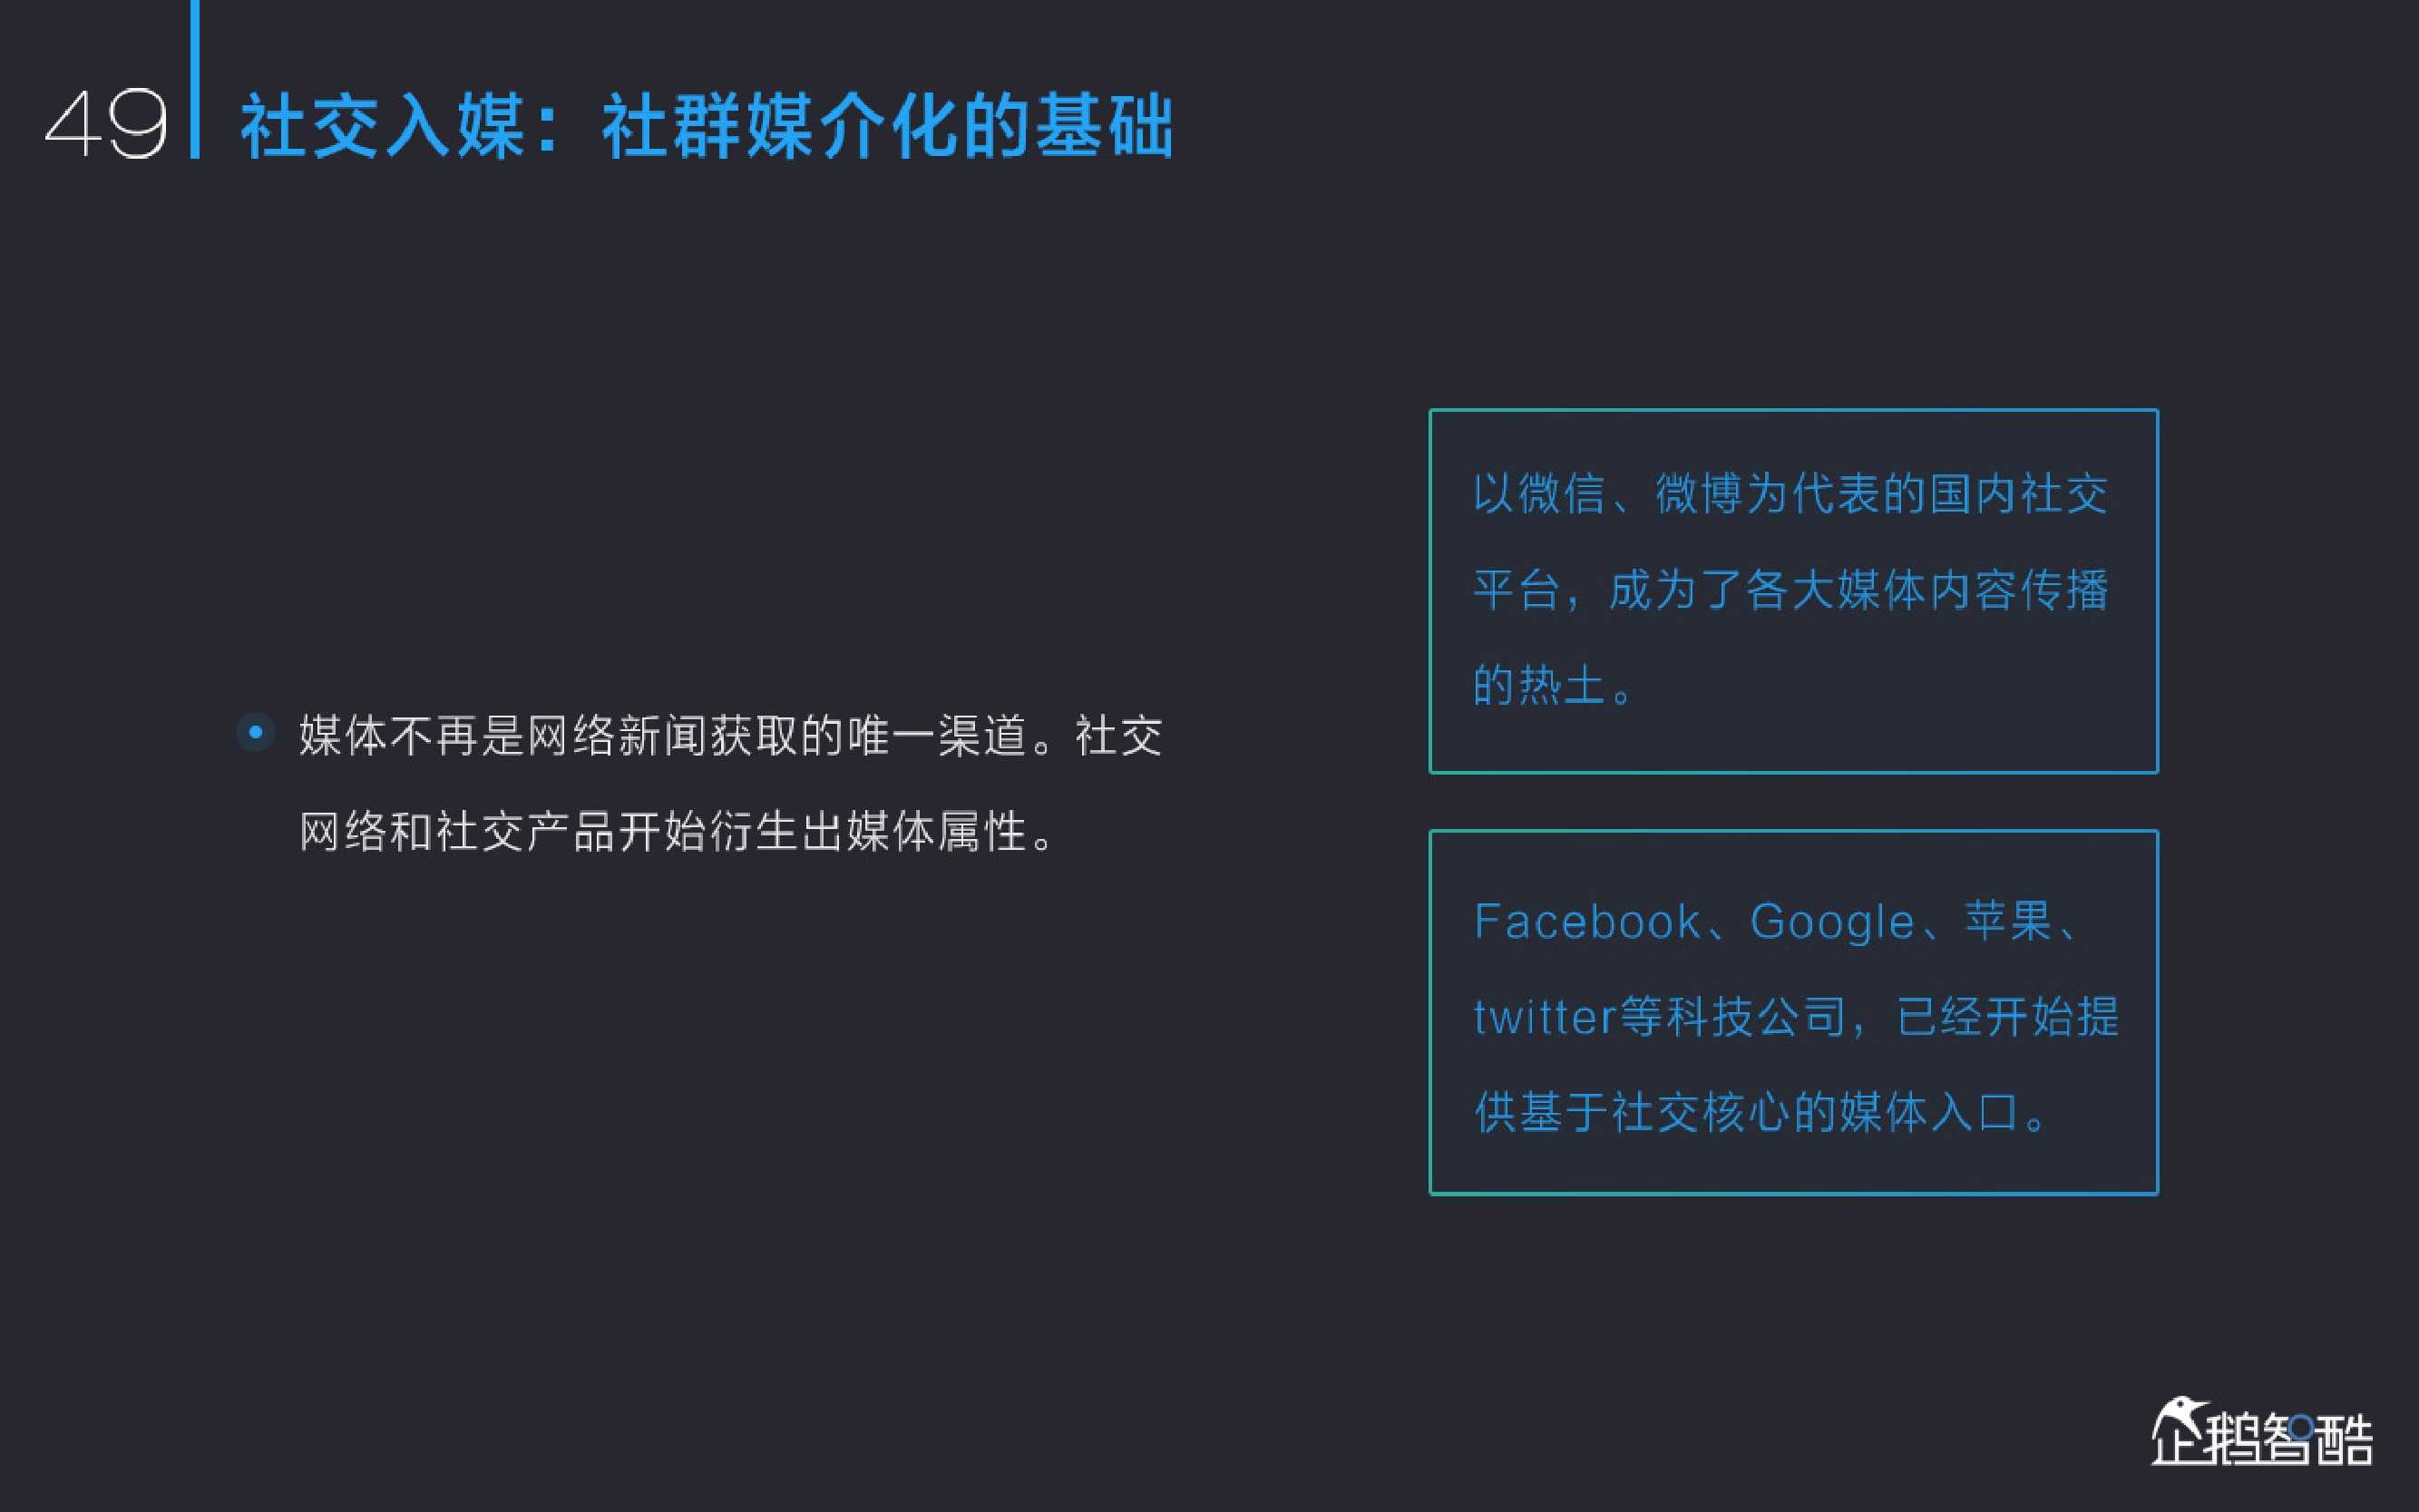 新媒体发展趋势报告：中国网络媒体的未来（2015）_000051